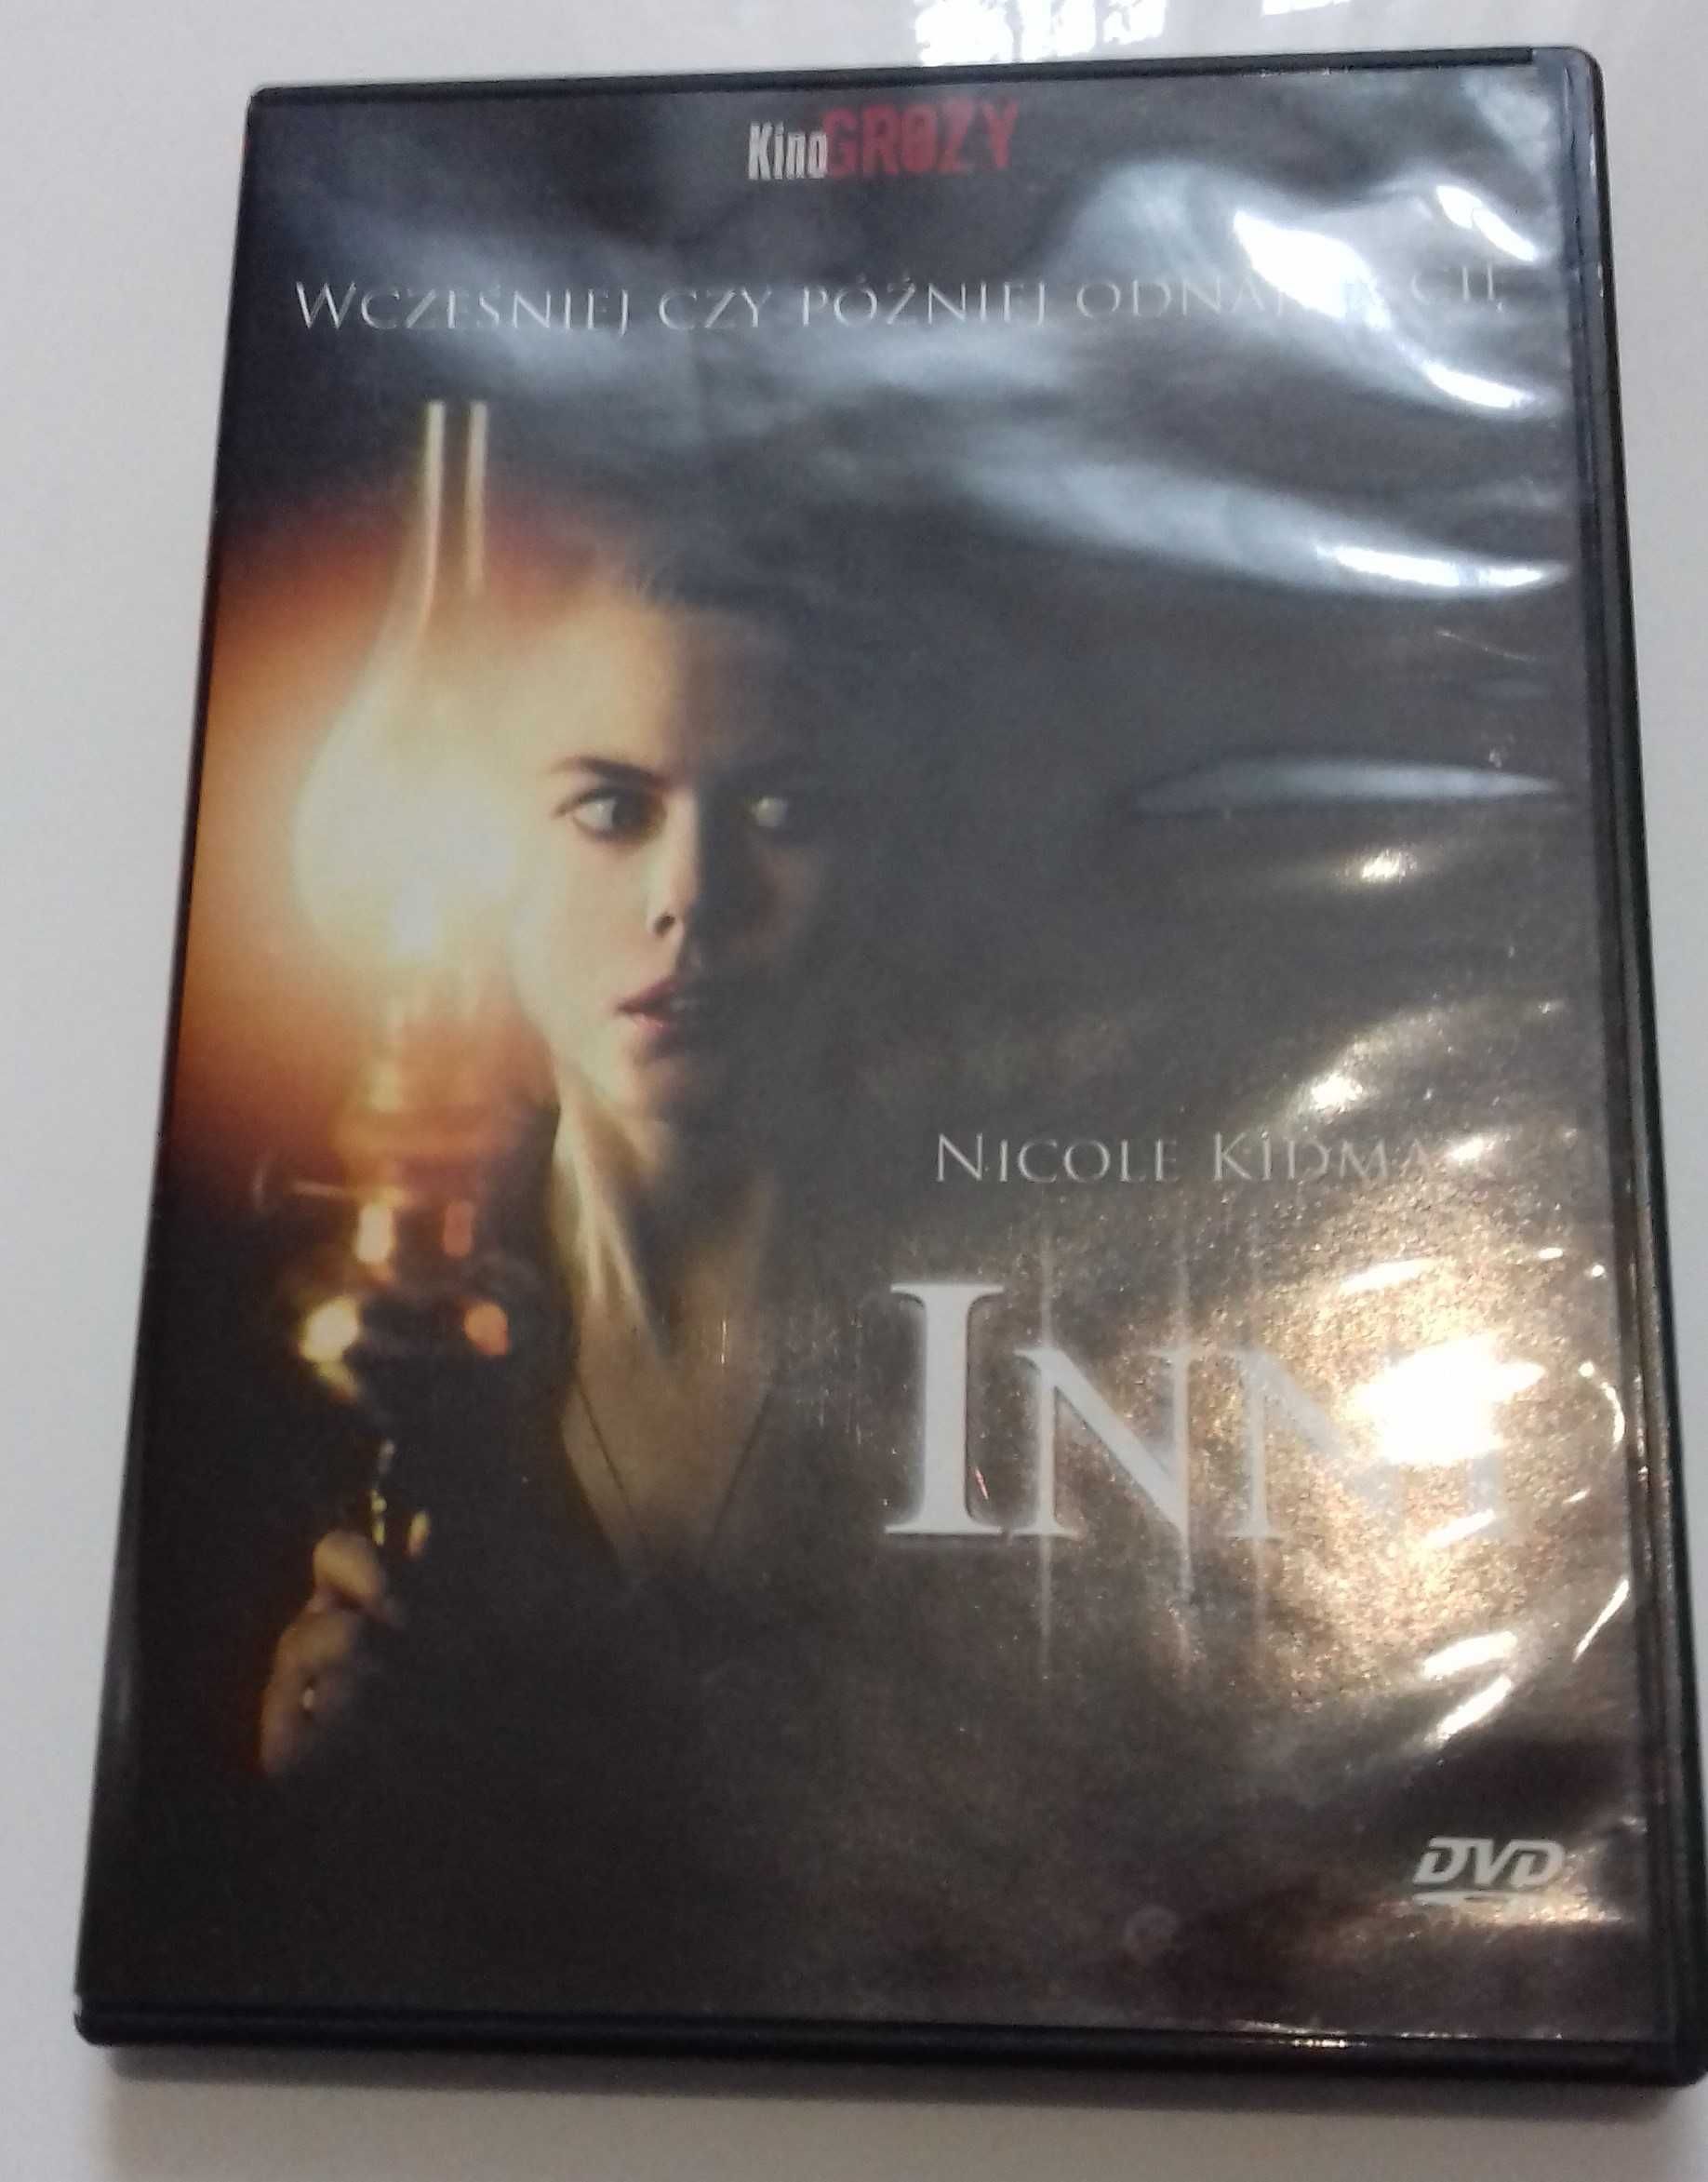 Film DVD "Inni" horror thriller kolekcja